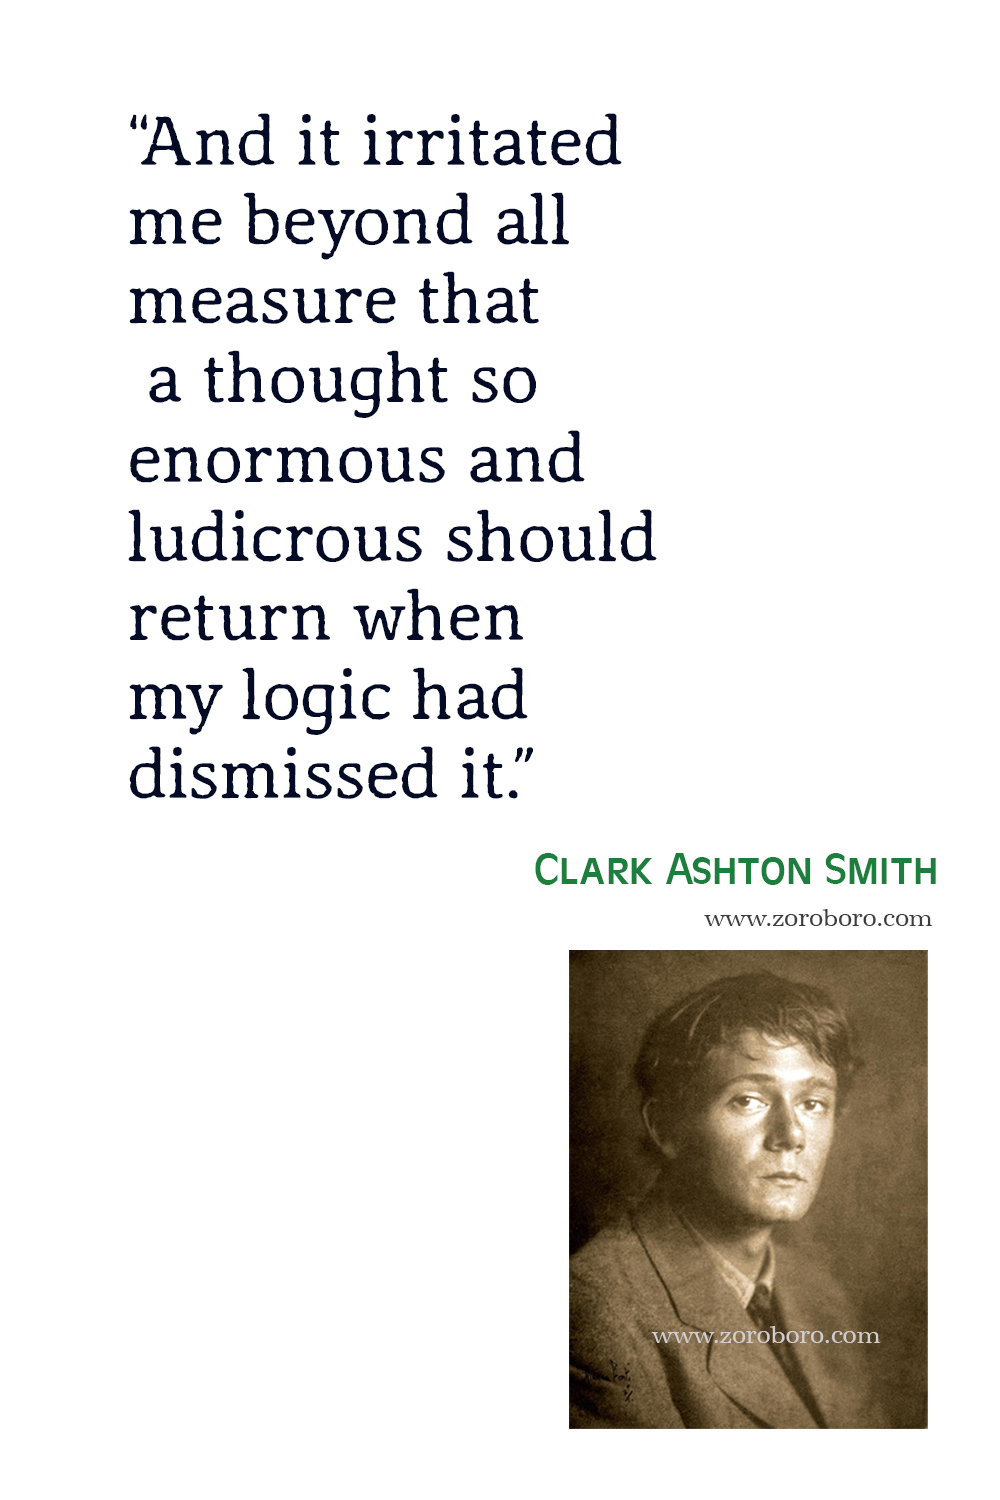 Clark Ashton Smith Quotes, Clark Ashton Smith Poems, Clark Ashton Smith Poetry, Clark Ashton Smith Books Quotes, Clark Ashton Smith.